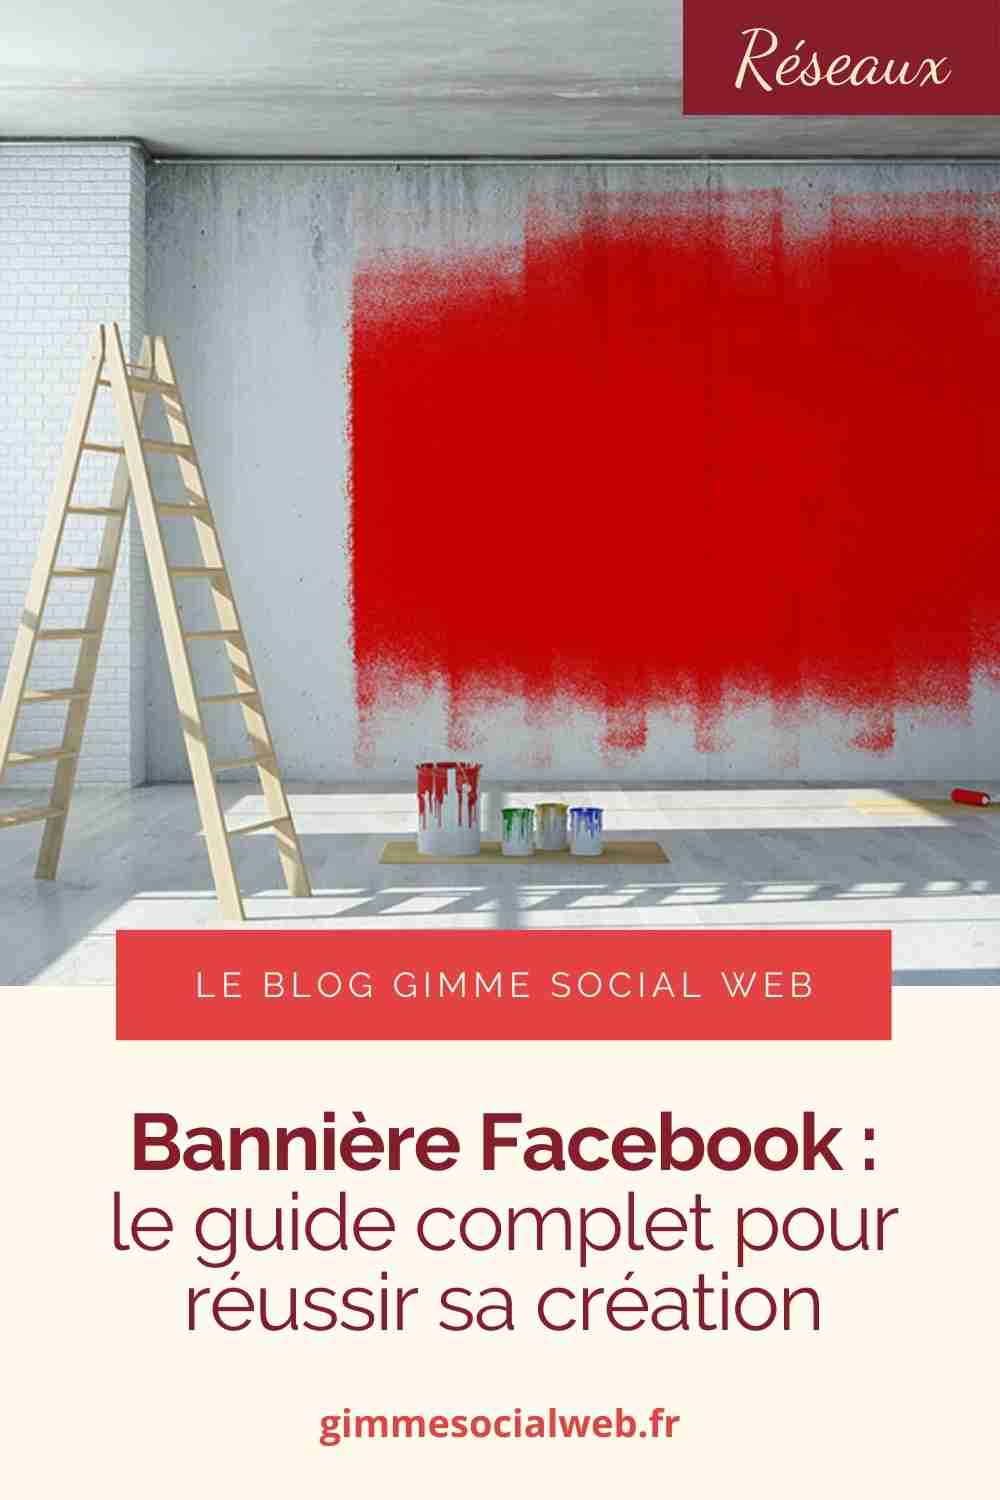 Mur partiellement peint en rouge + cover Epingle Pinterest - bannière Facebook